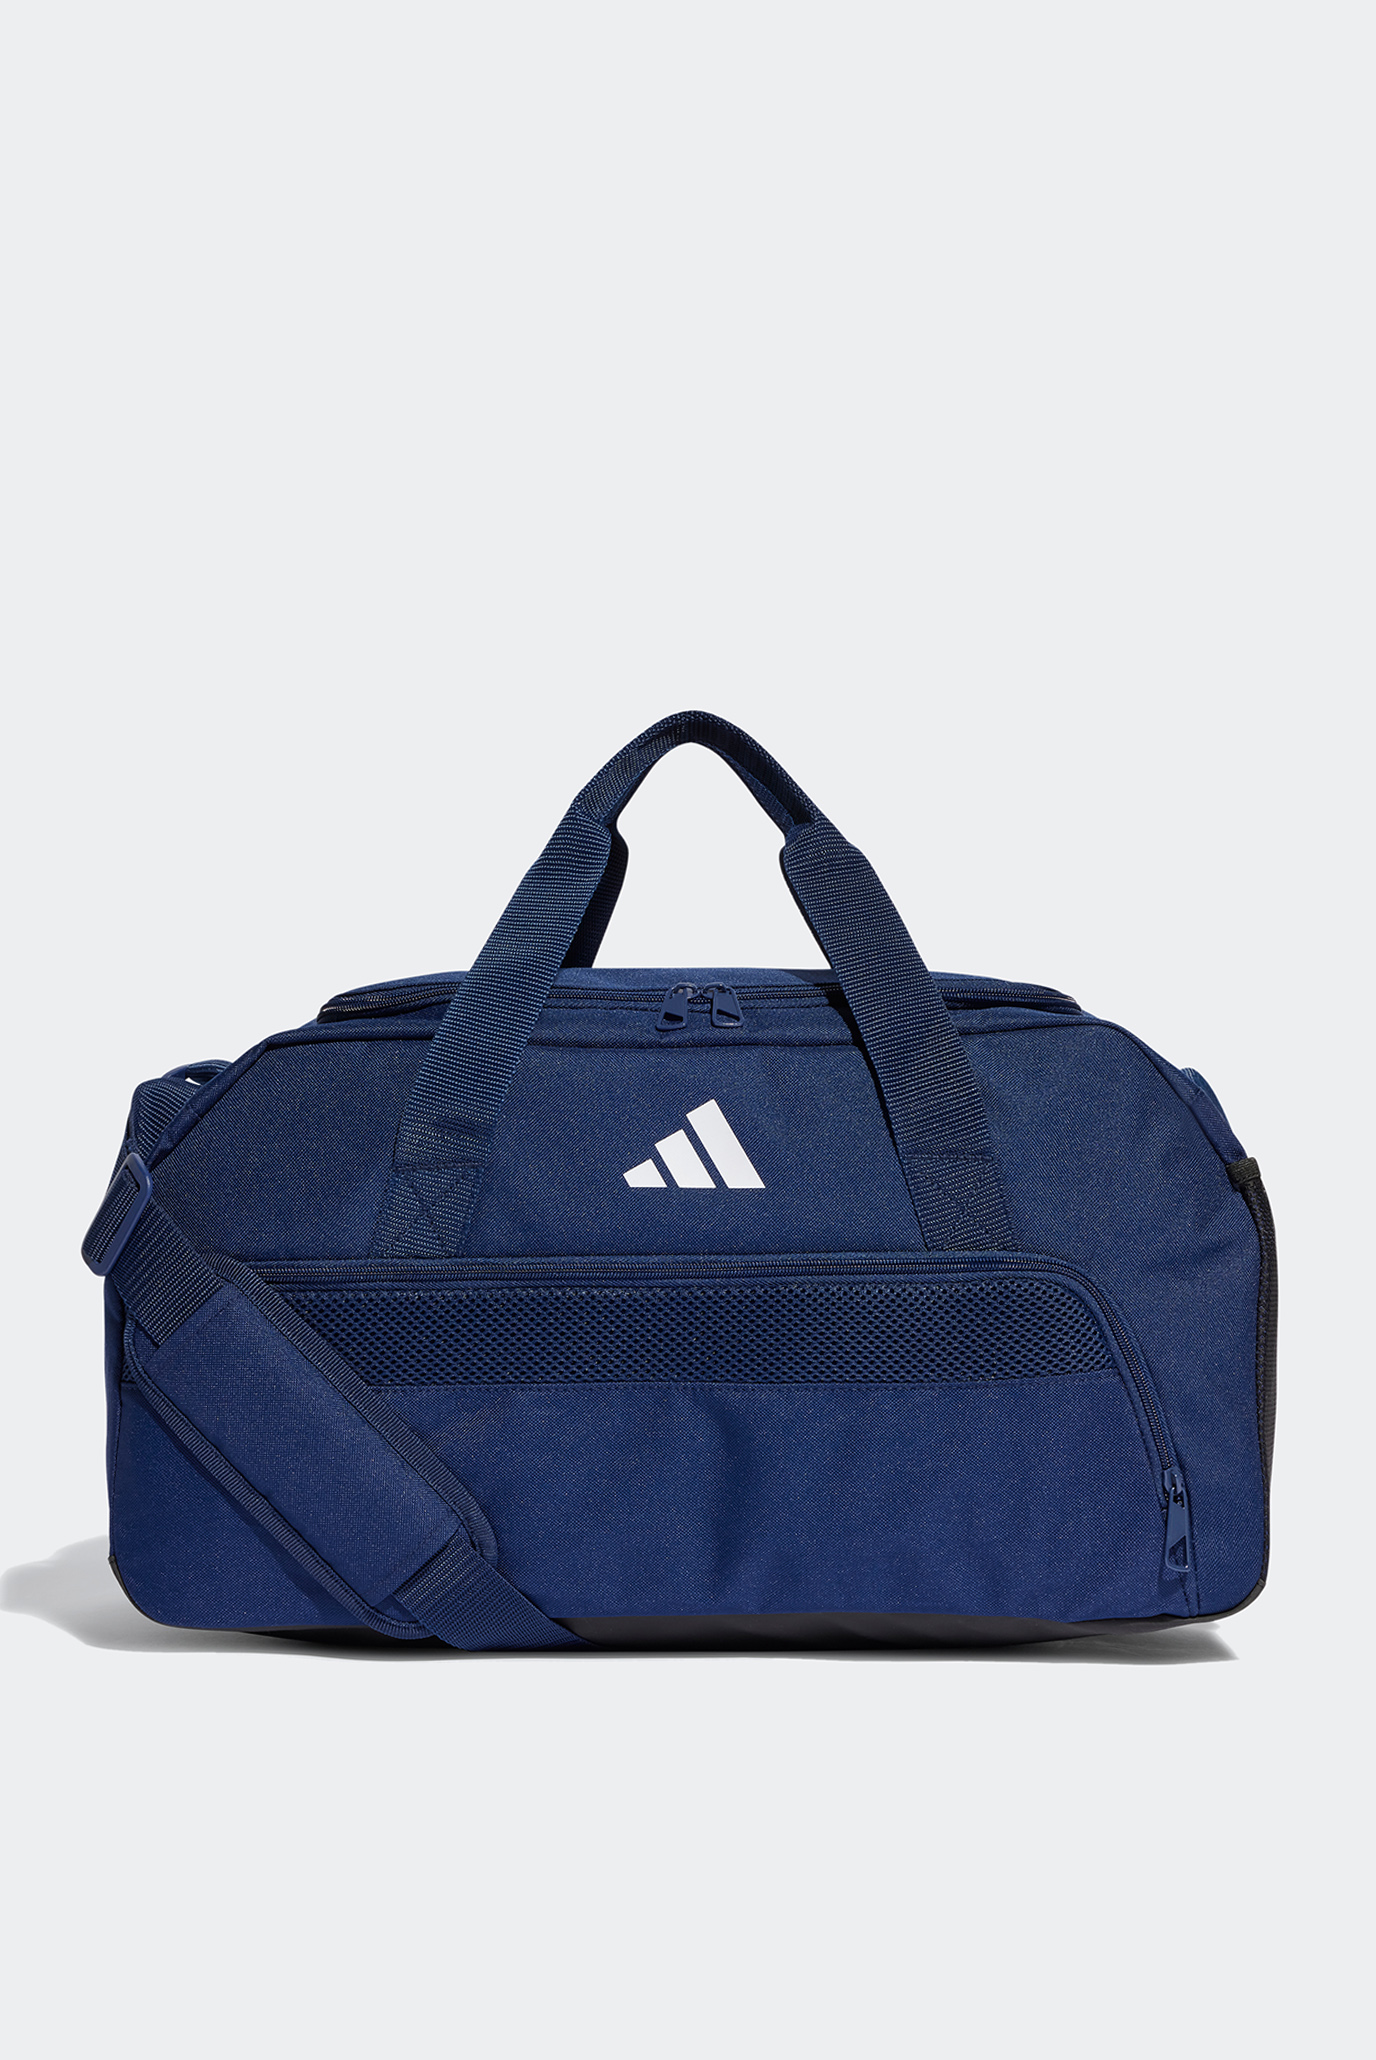 Синя спортивна сумка Tiro League Duffel Bag Small 1